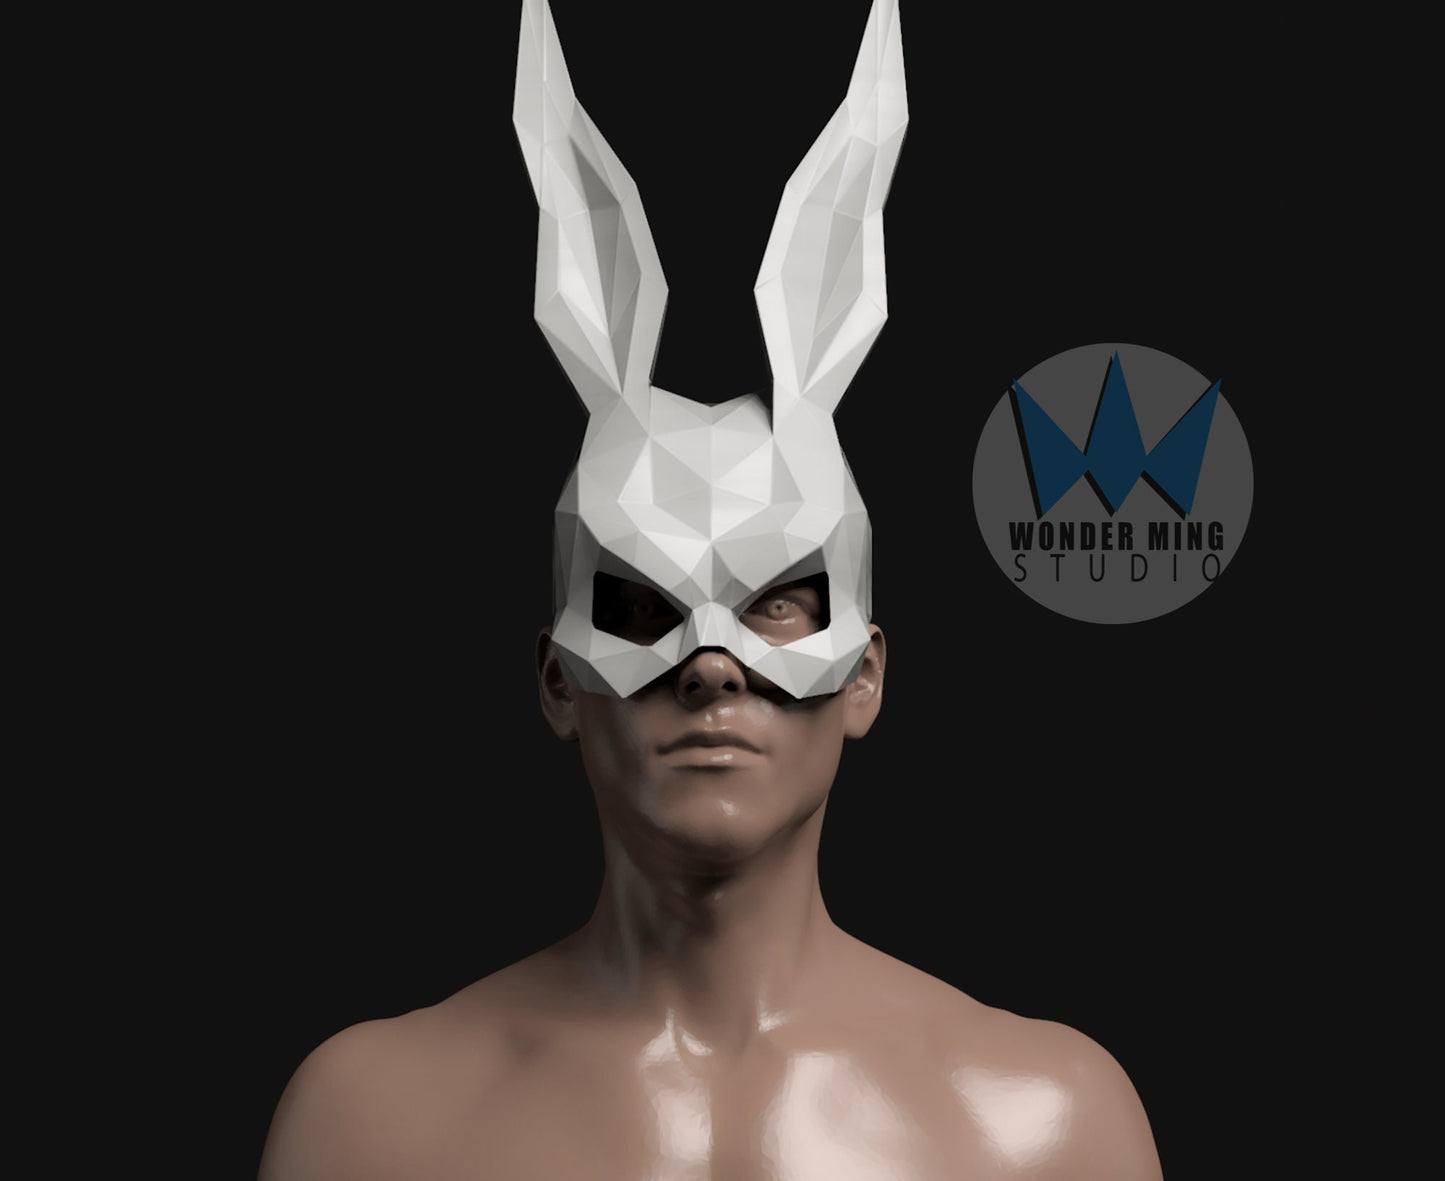 Donnie Darko Rabbit Mask